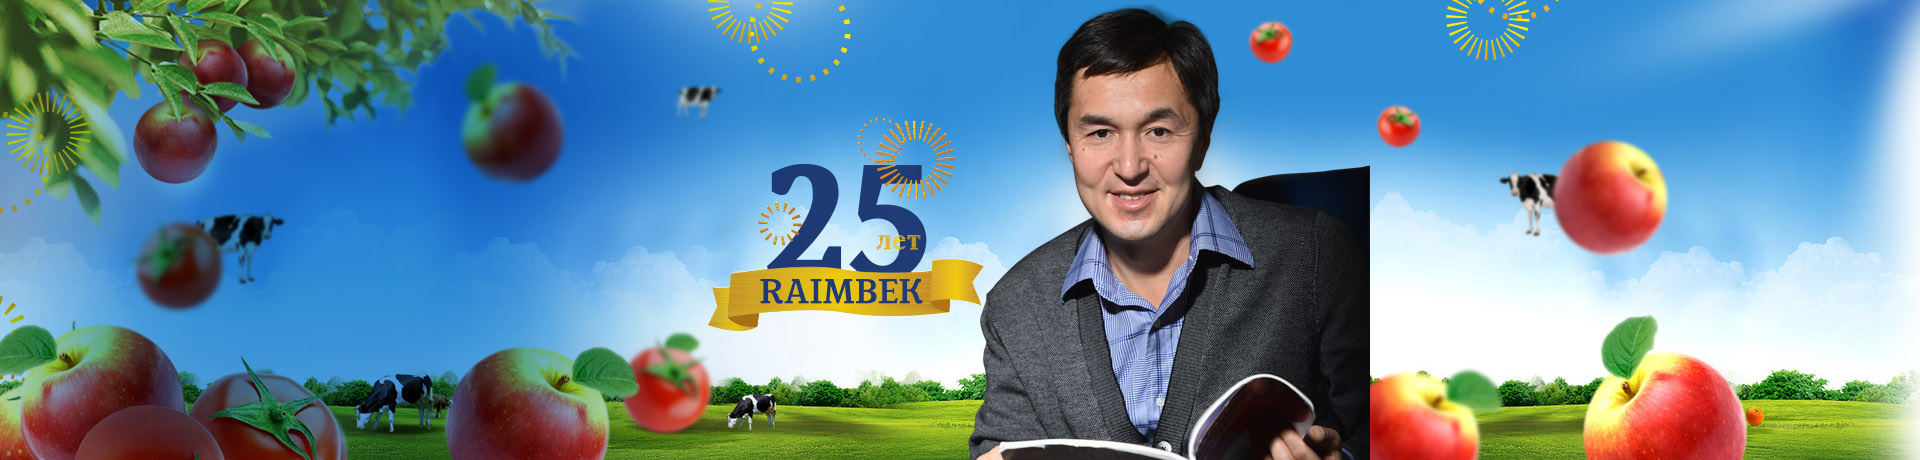 RAIMBEK COMPANY turns 25